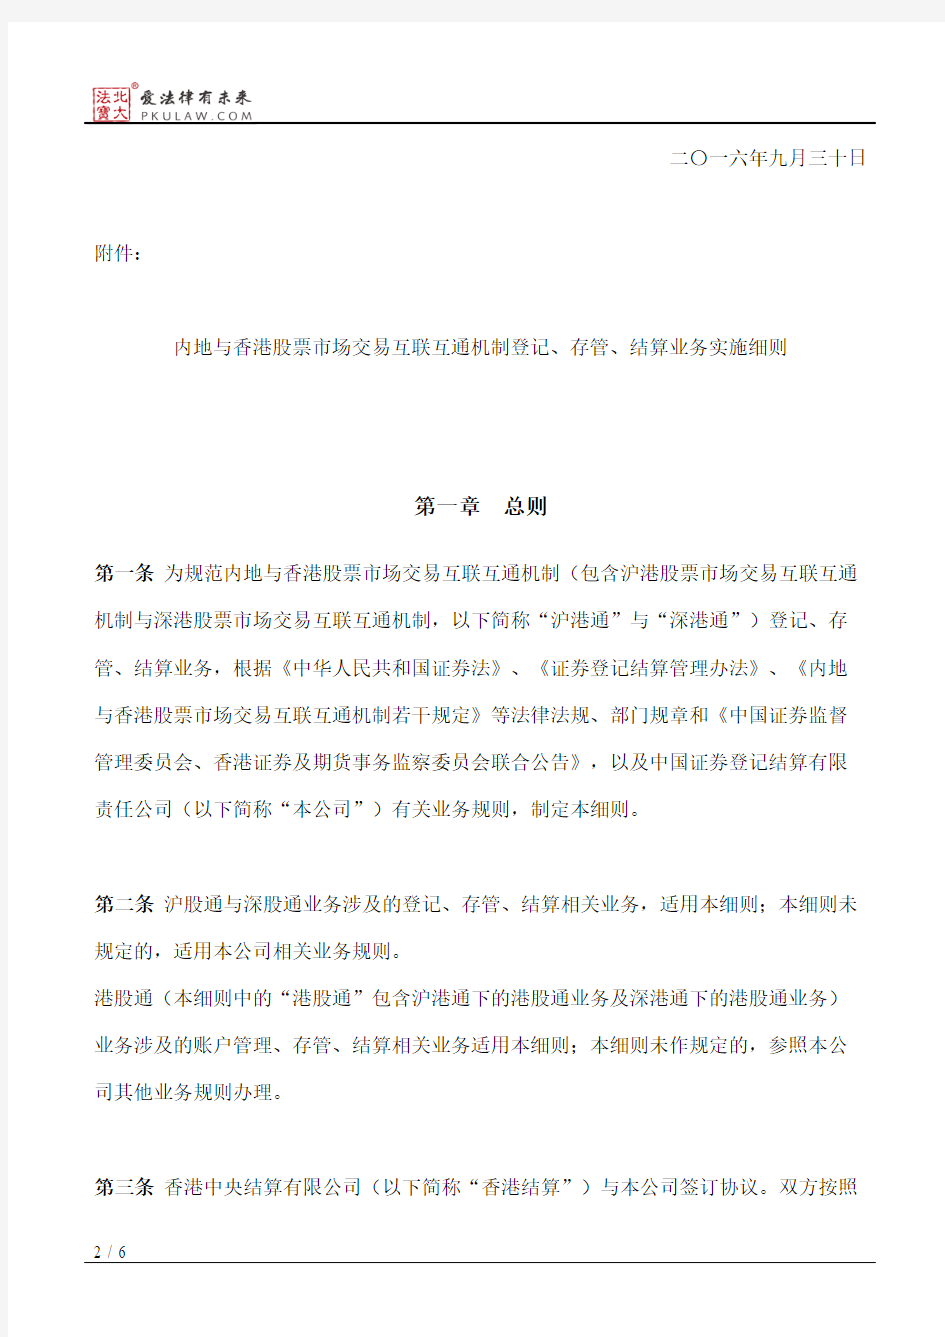 中国证券登记结算有限责任公司关于发布《内地与香港股票市场交易